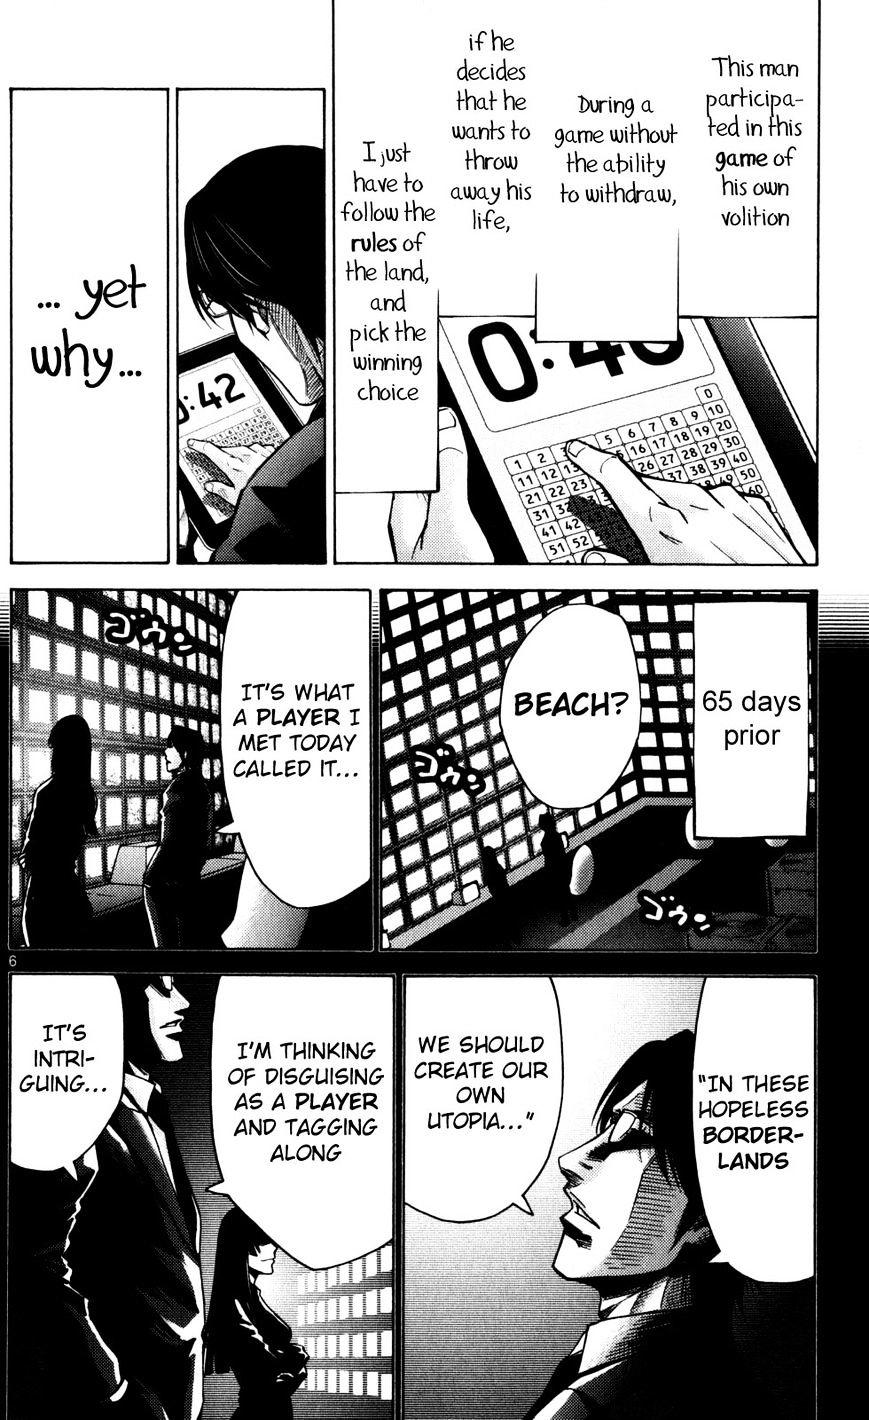 Imawa No Kuni No Alice Chapter 51.5 : Side Story 6 - King Of Diamonds (5) page 6 - Mangakakalot